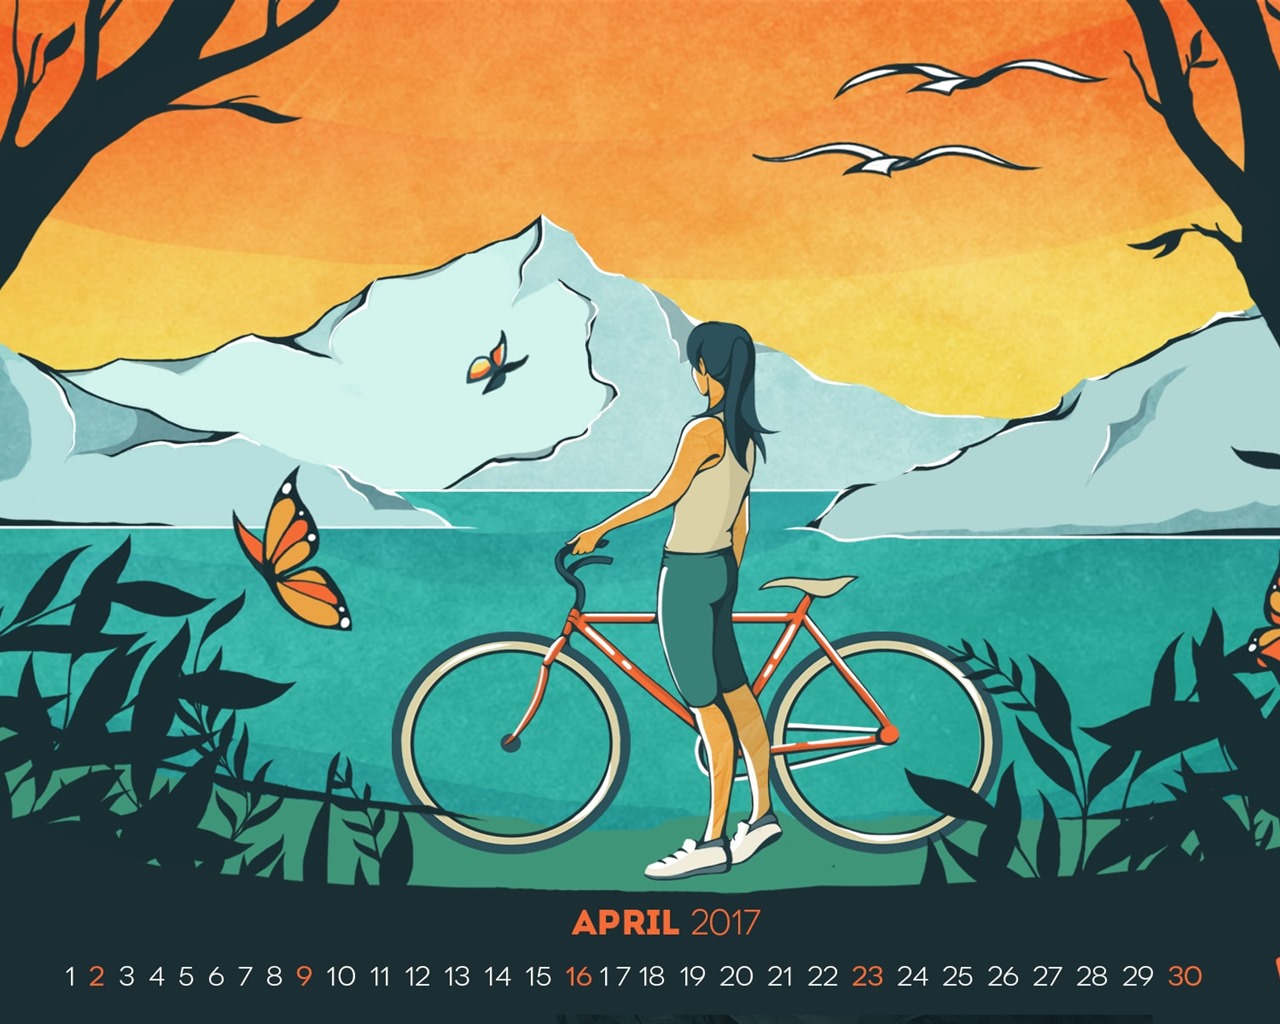 April 2017 calendar wallpaper (1) #1 - 1280x1024